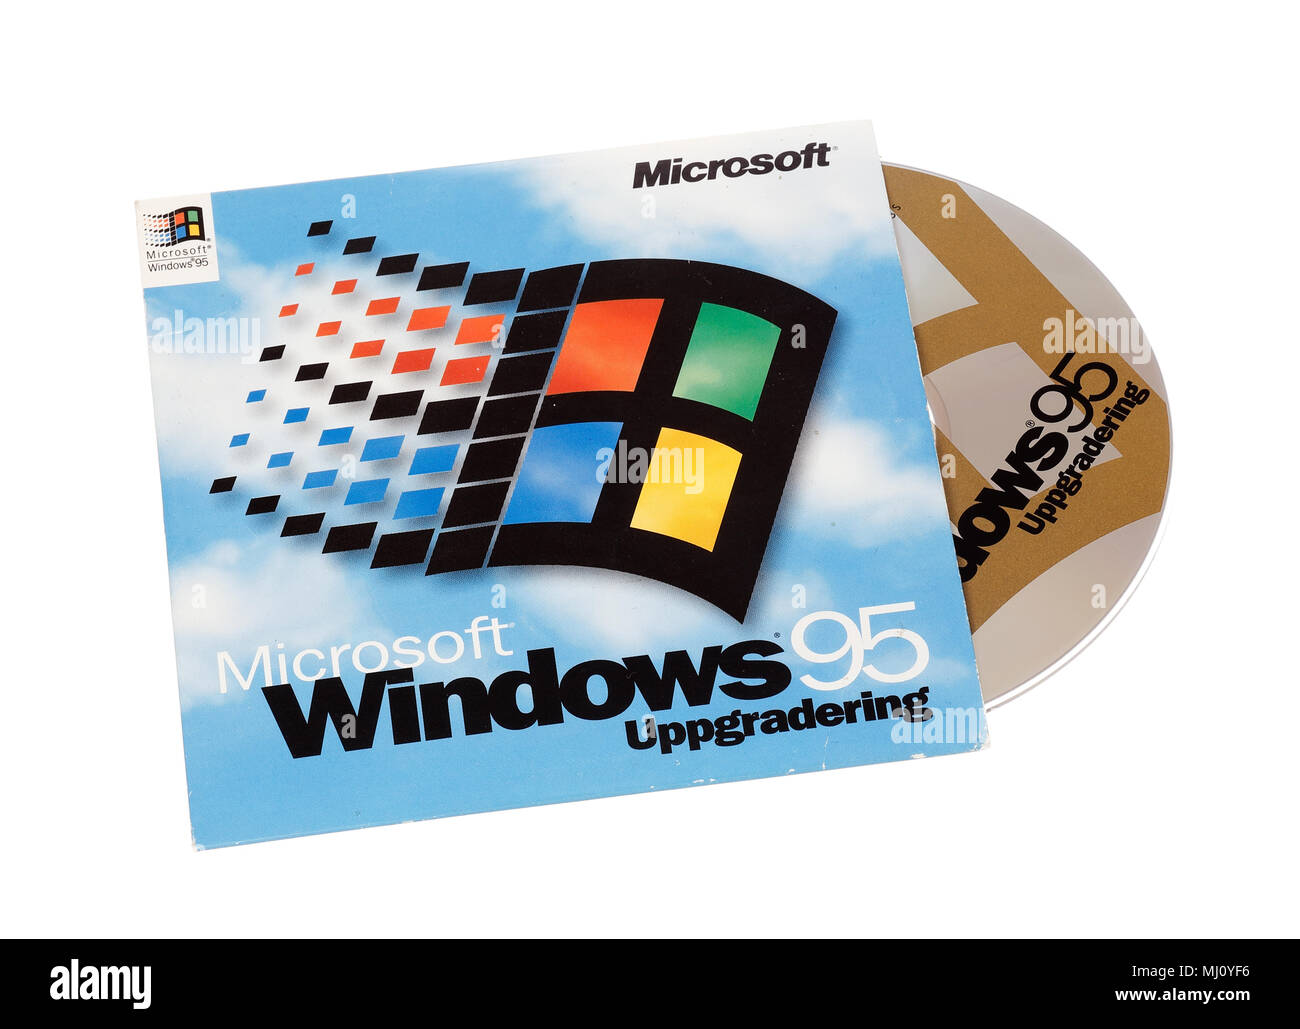 Stockholm, Schweden, 15. Dezember 2014: Microsoft Windows 95 Betriebssystem Abdeckung mit CD für die Schwedische version, auf weißem Hintergrund. Stockfoto